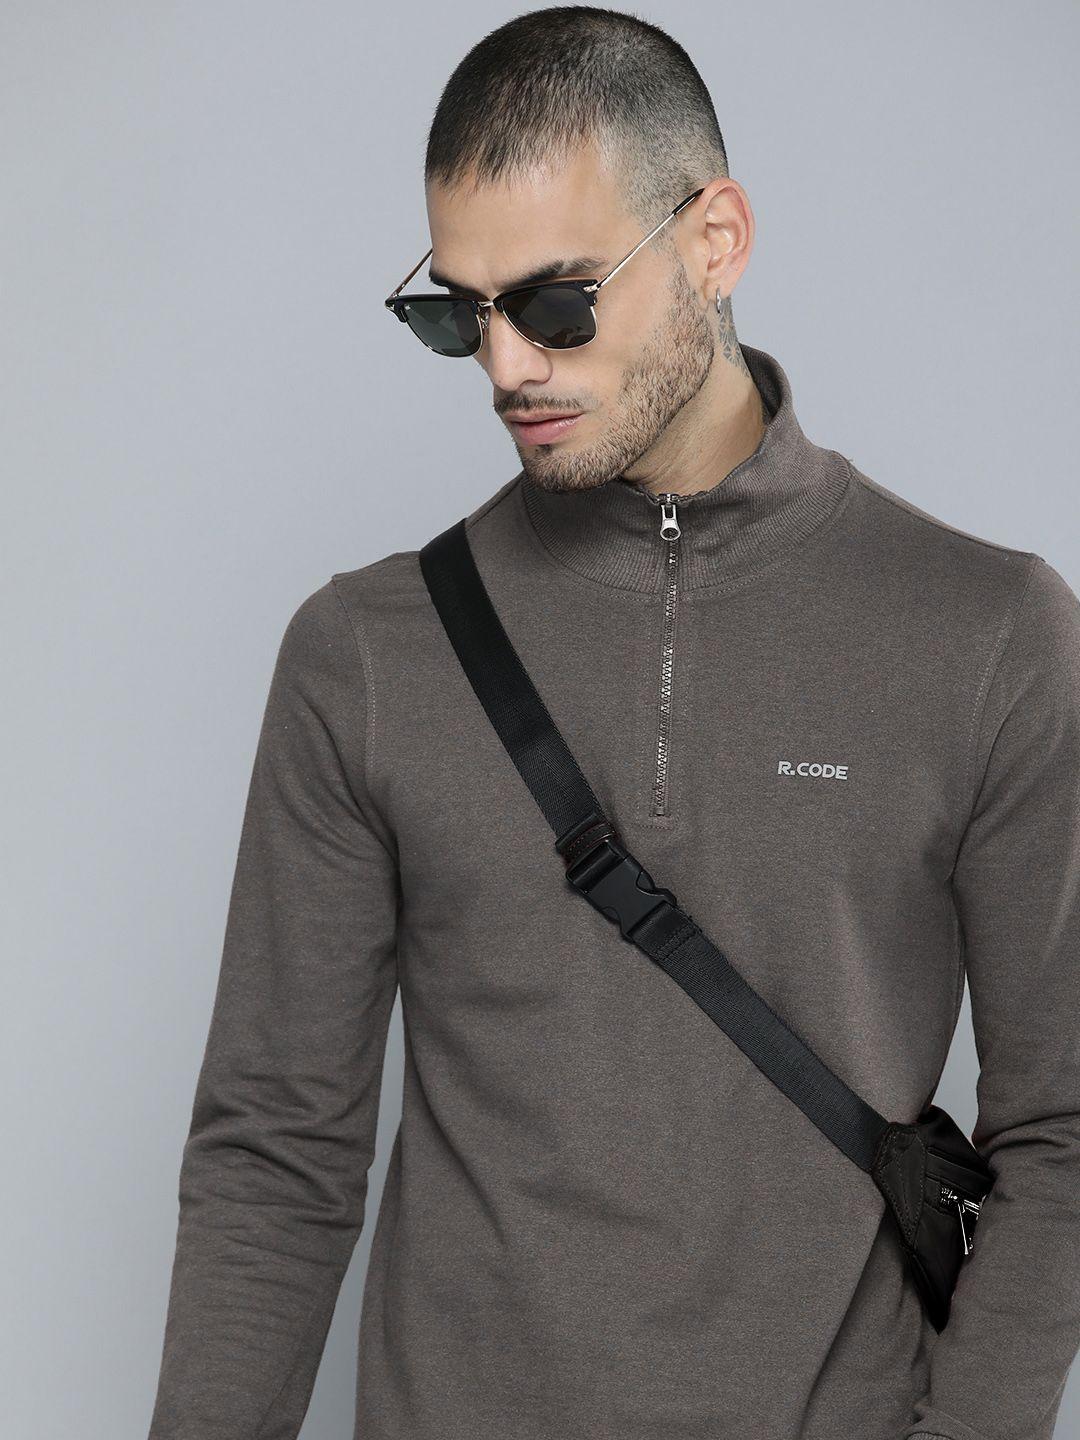 r.code by the roadster life co. men high neck half zipper sweatshirt